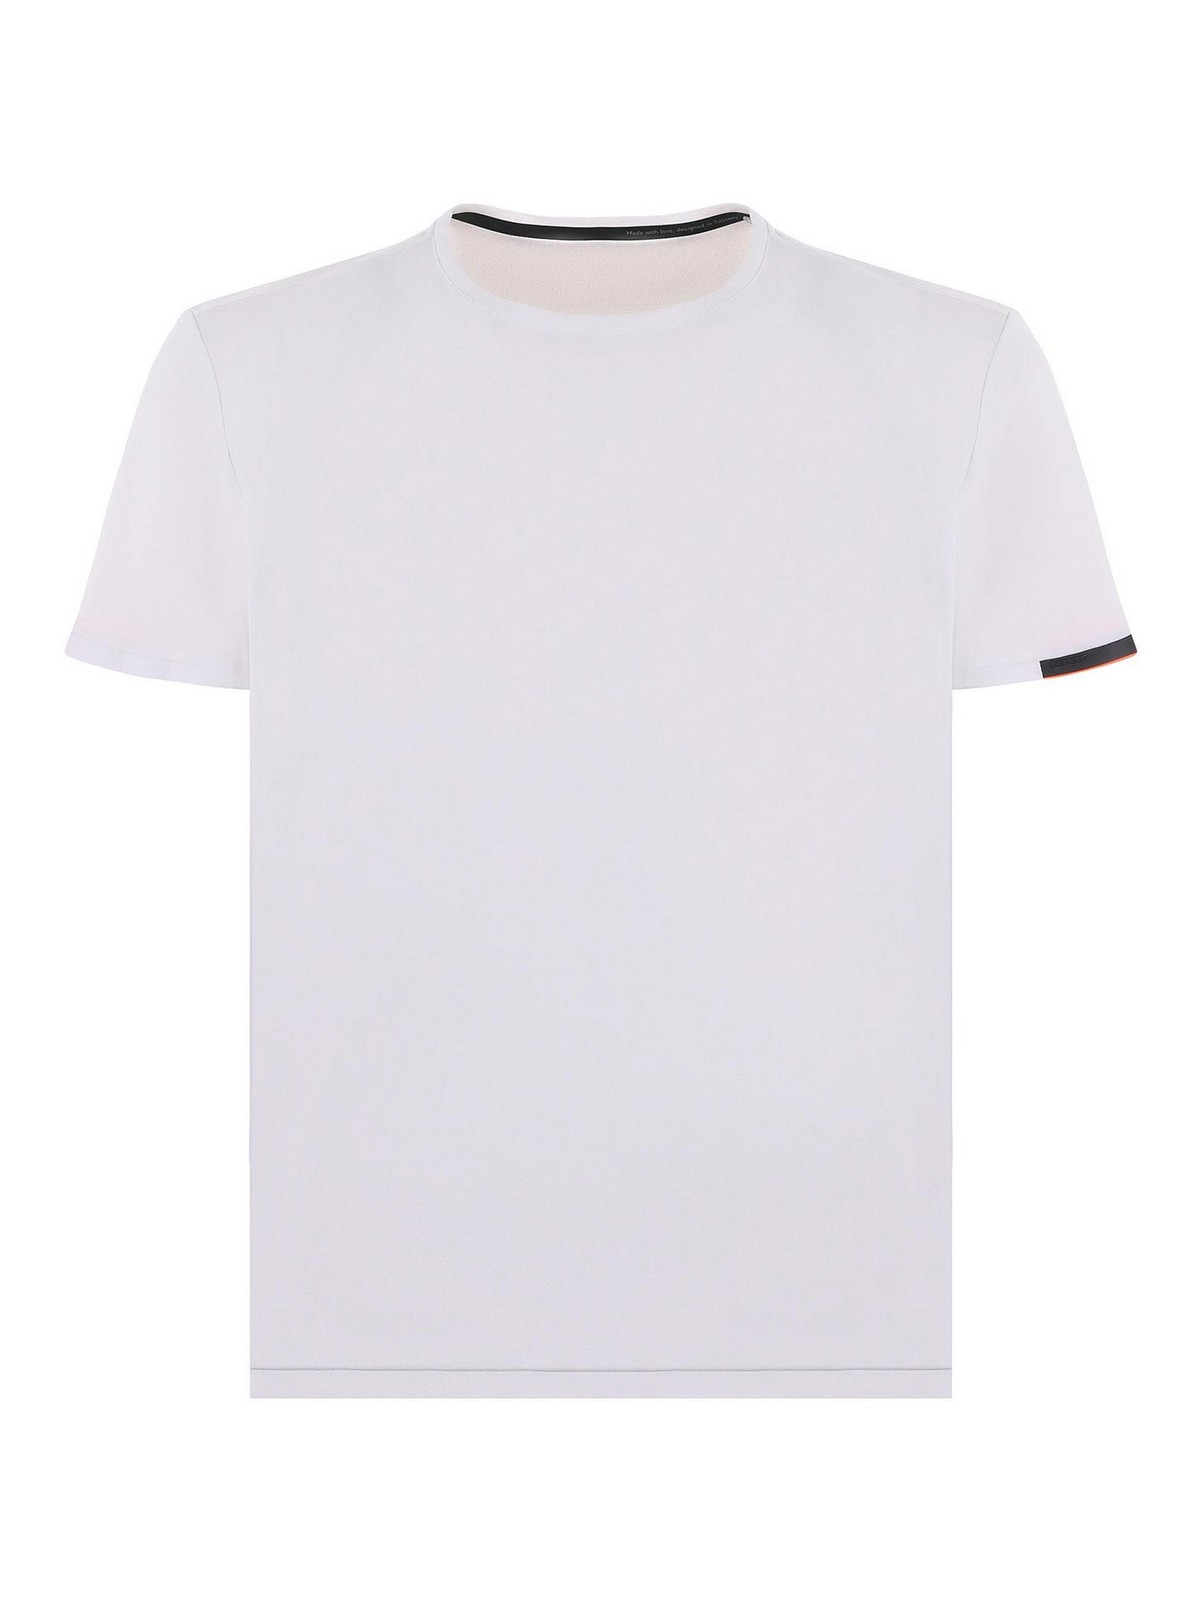 Shop Rrd Roberto Ricci Designs Camiseta - Blanco In White